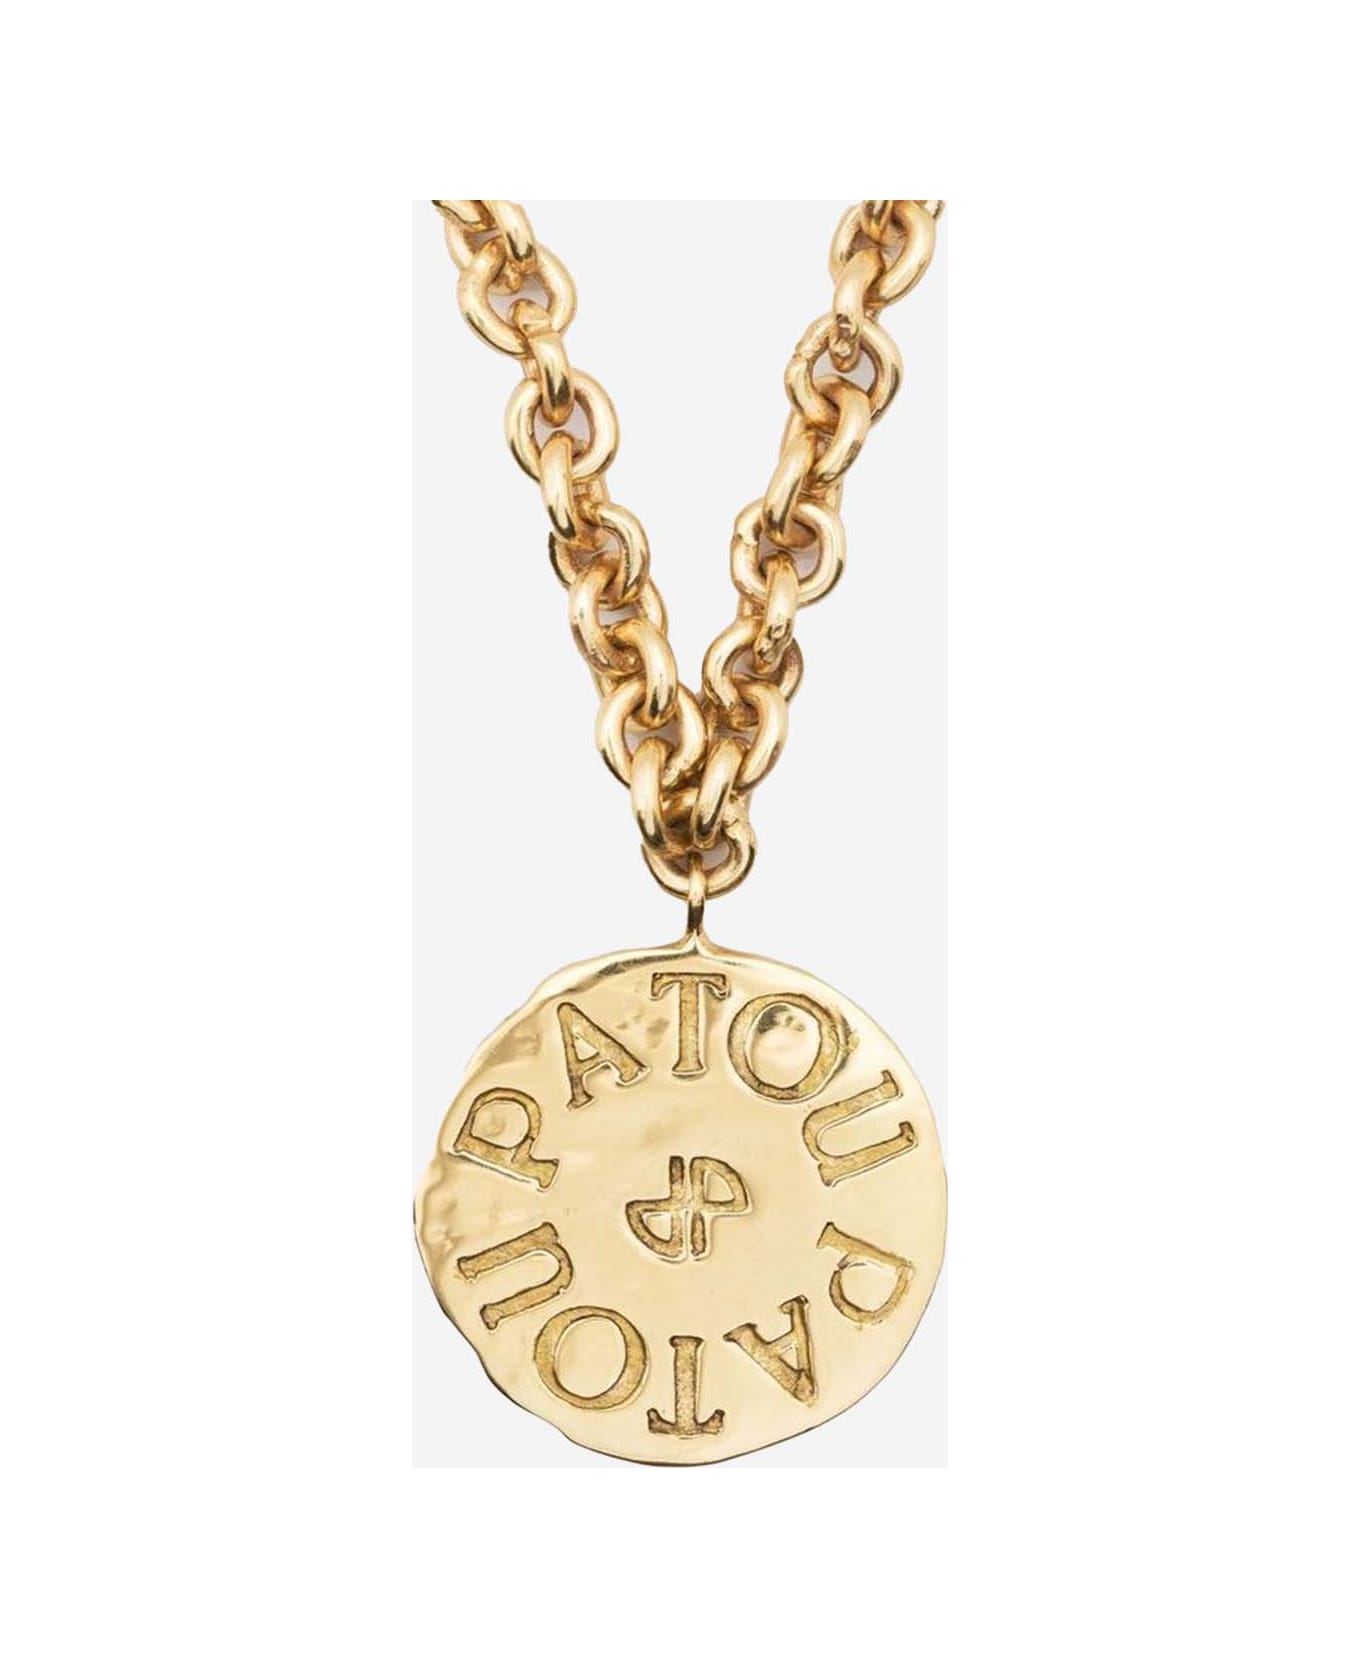 Patou Antique Coin Charm Necklace - Golden